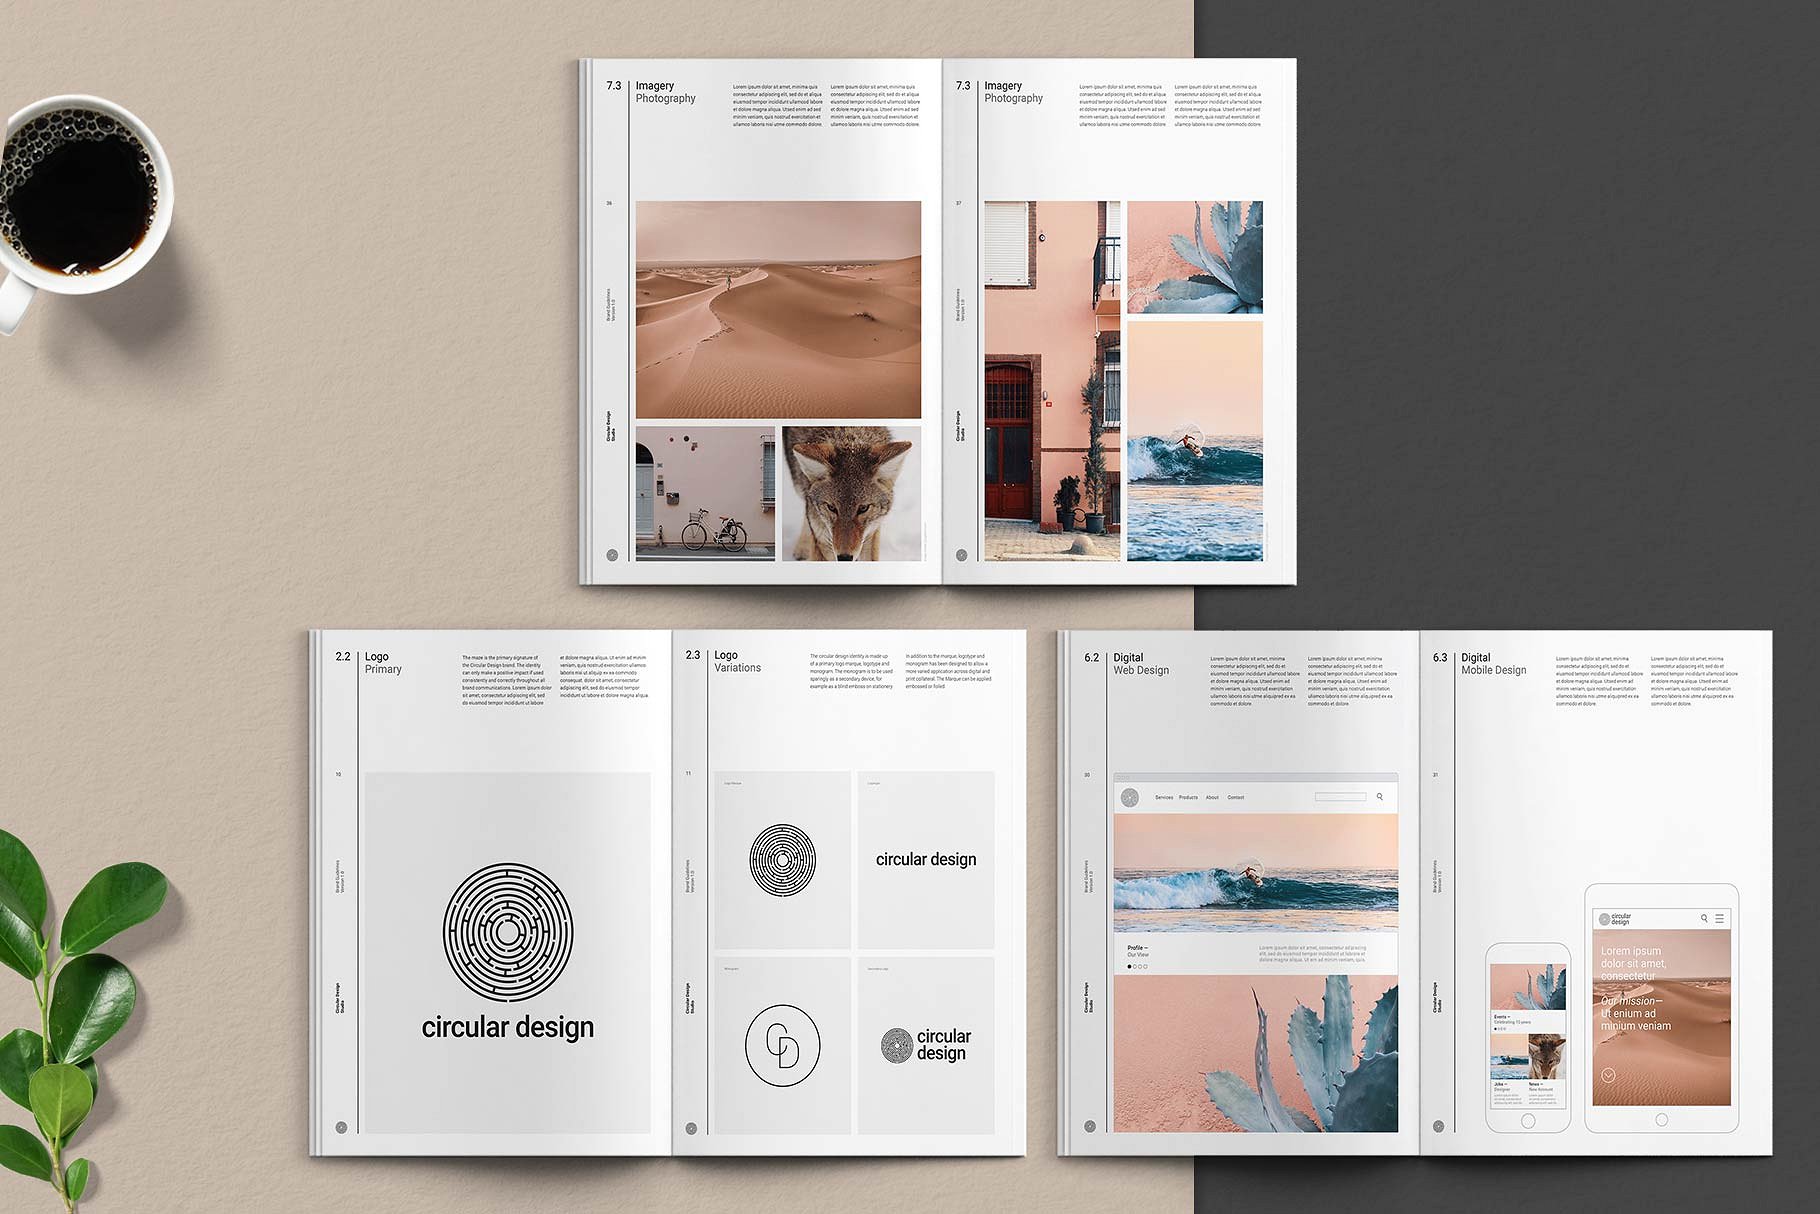 极简主义的品牌规范指南杂志InDesign模板下载 THE MINIMALIST / Bundle Pack [indd]插图(2)